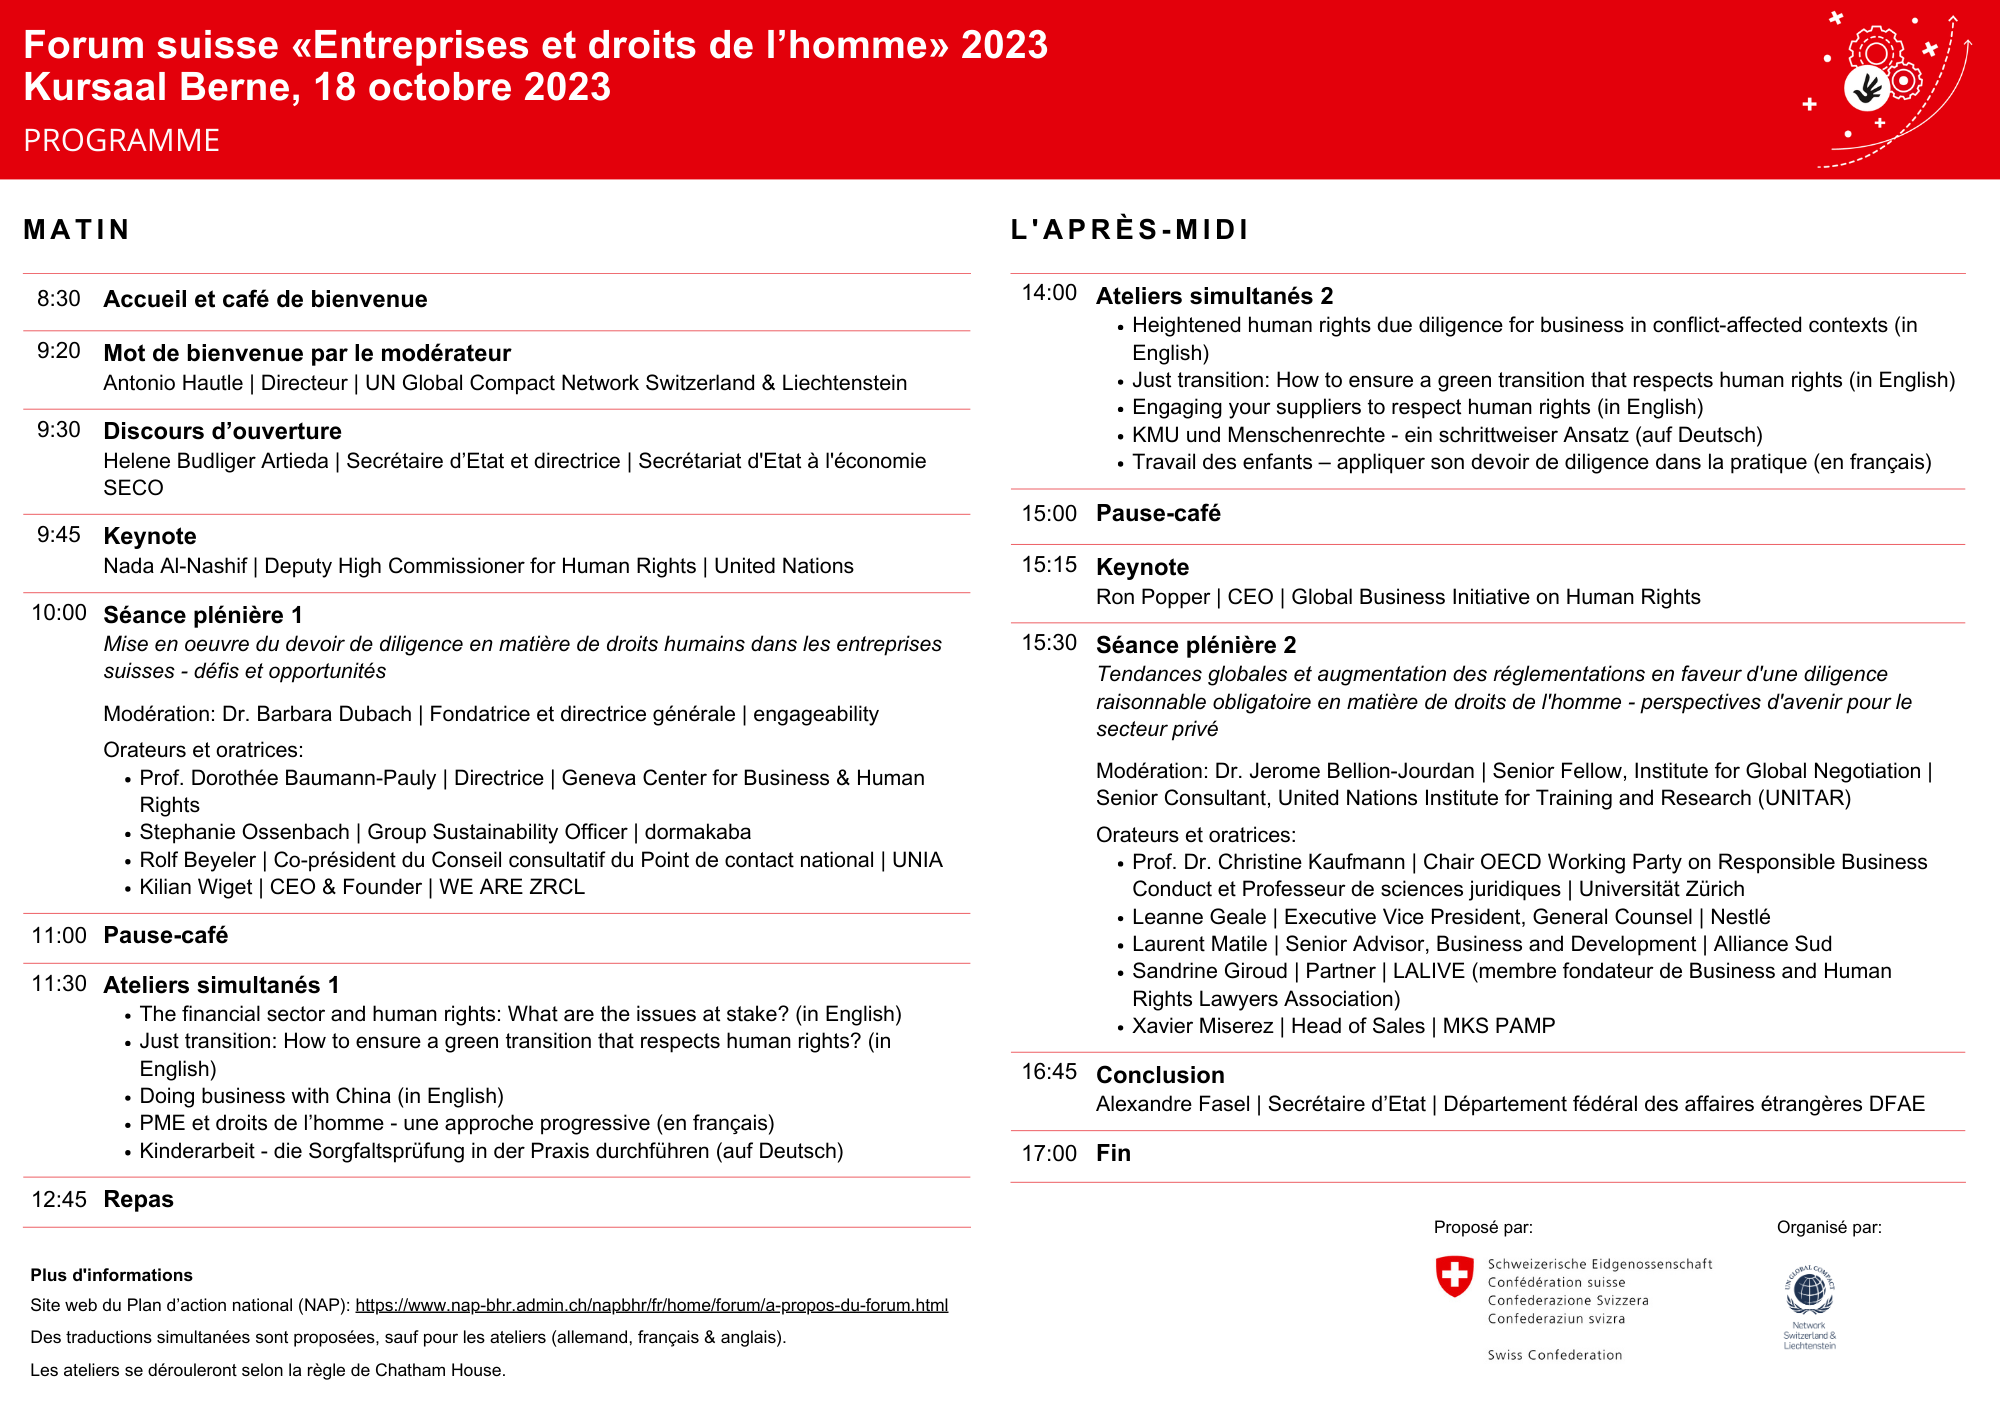 BHR Forum 2023_Programm_FR_11.10.2023